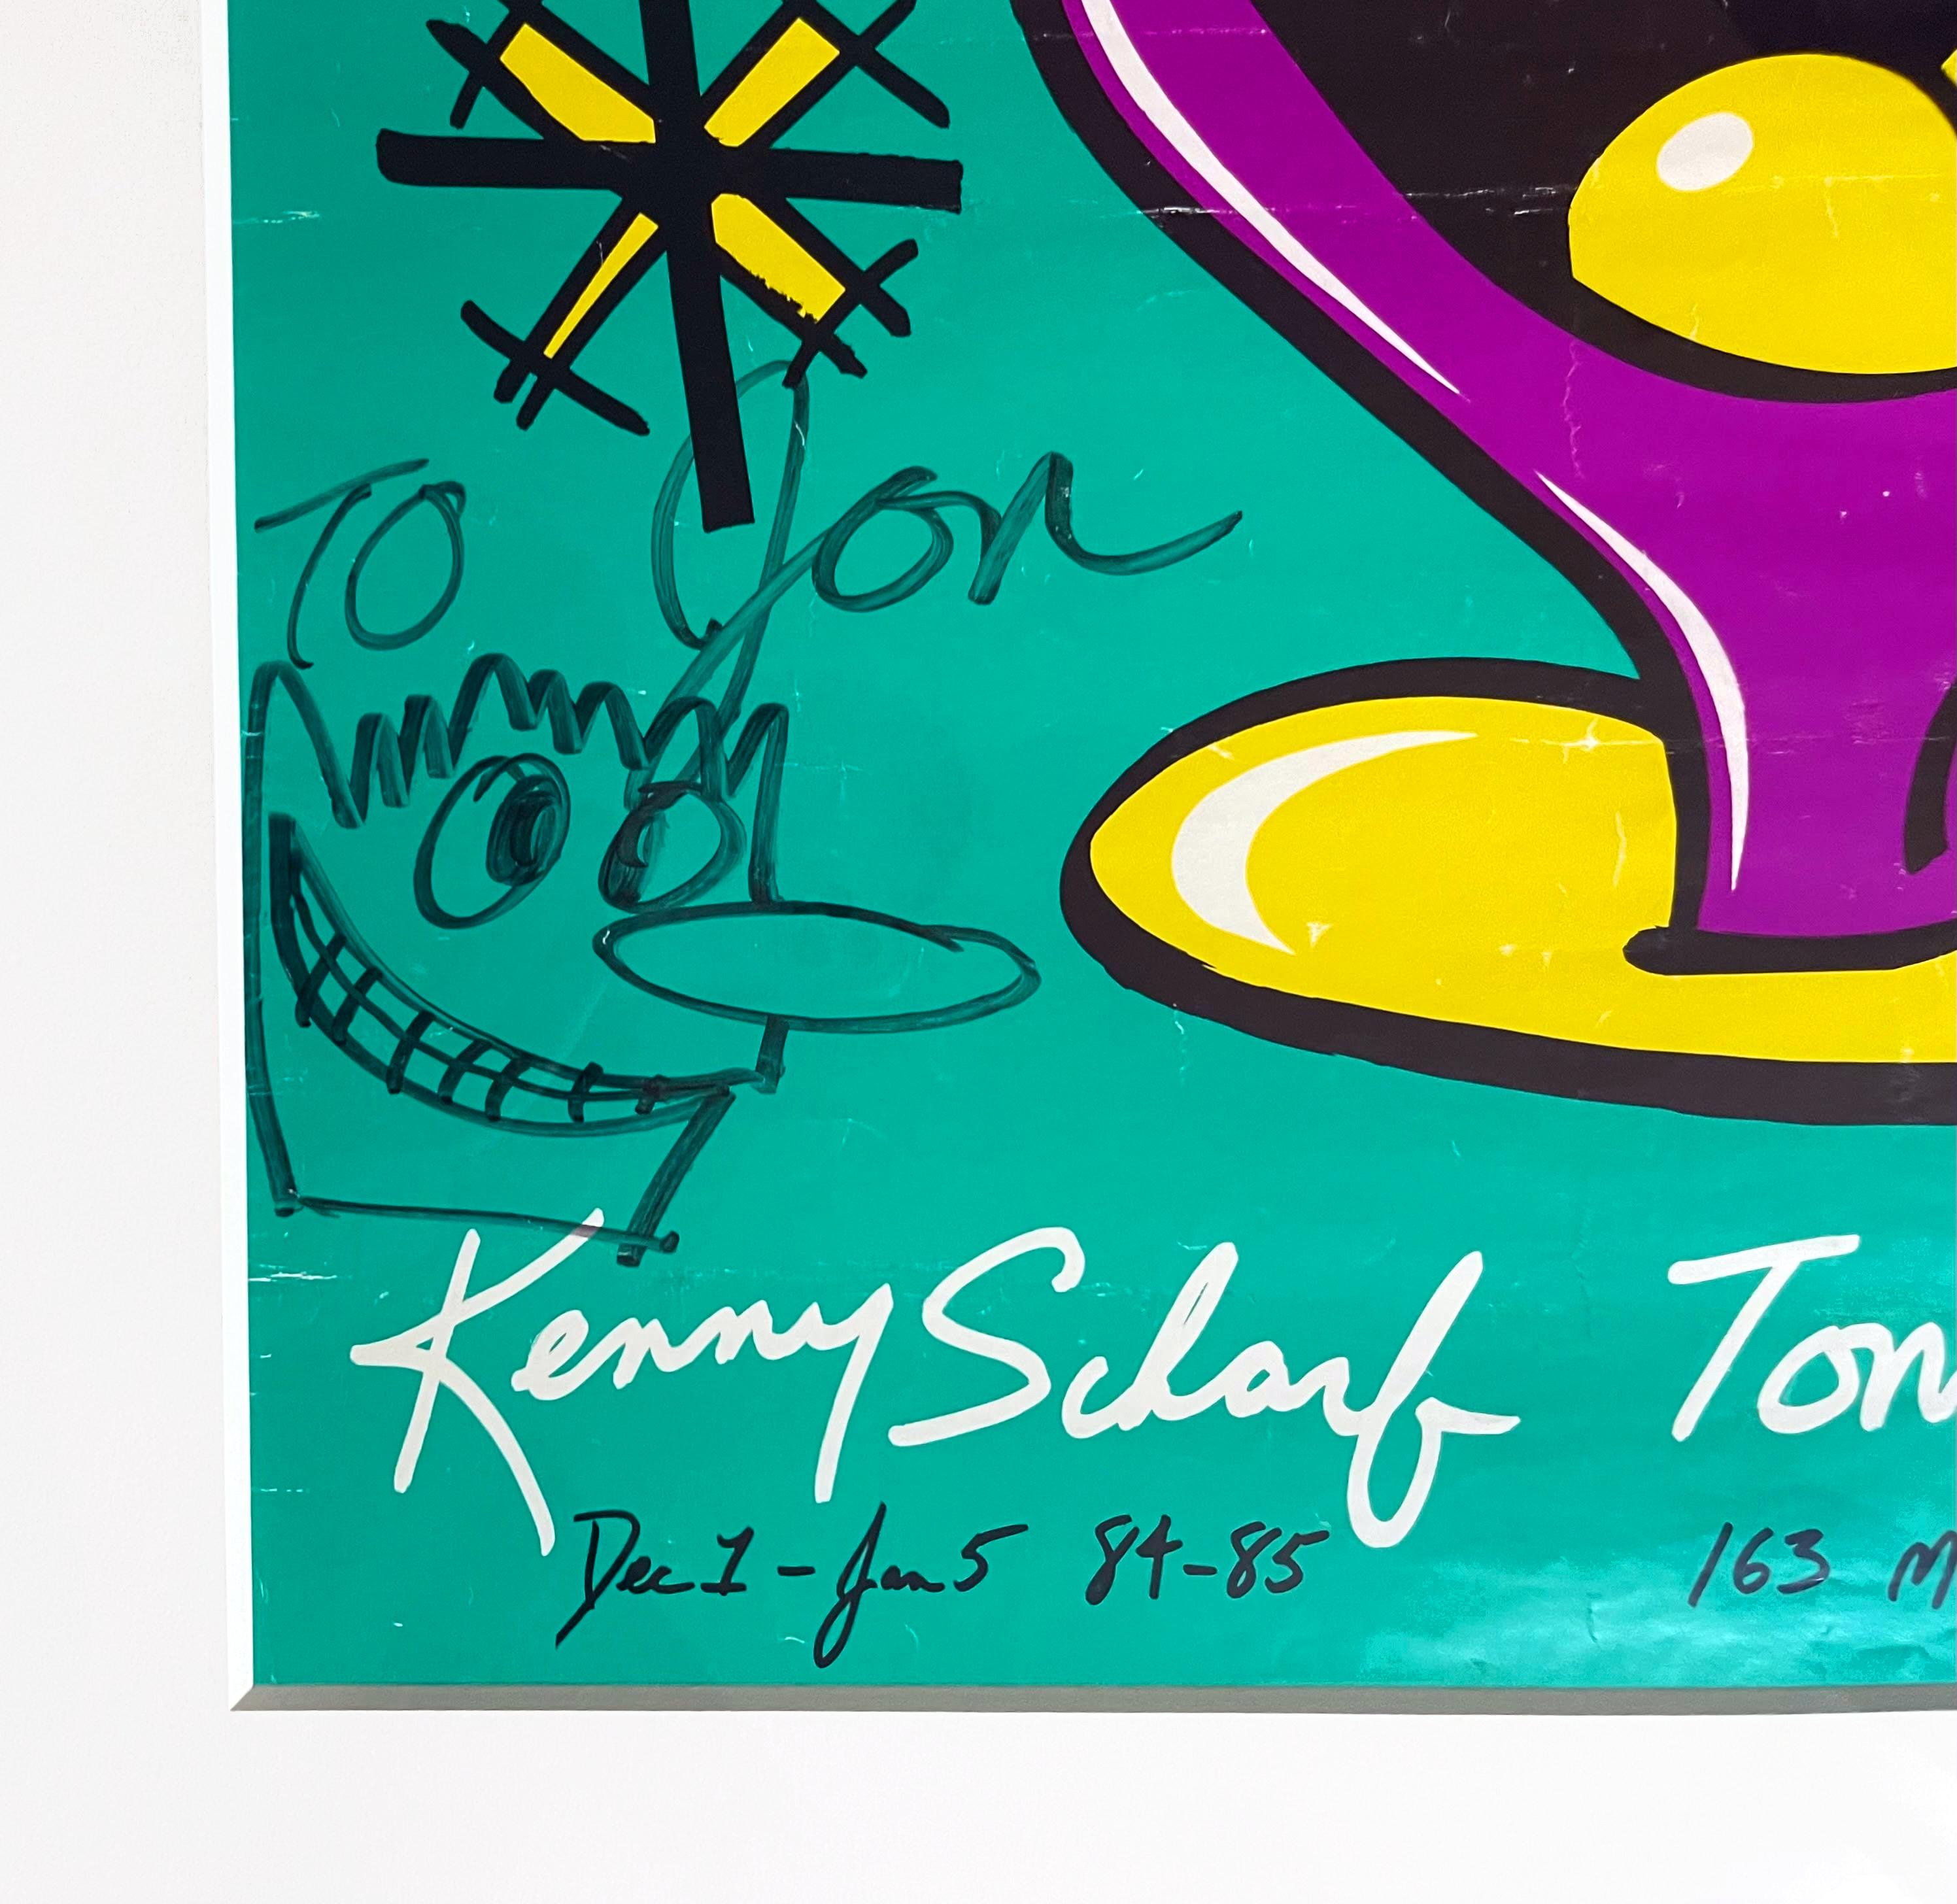 dessin unique sur l'affiche de Tony Shafrazi, signé et inscrit au petit ami de Warhol - Art de Kenny Scharf